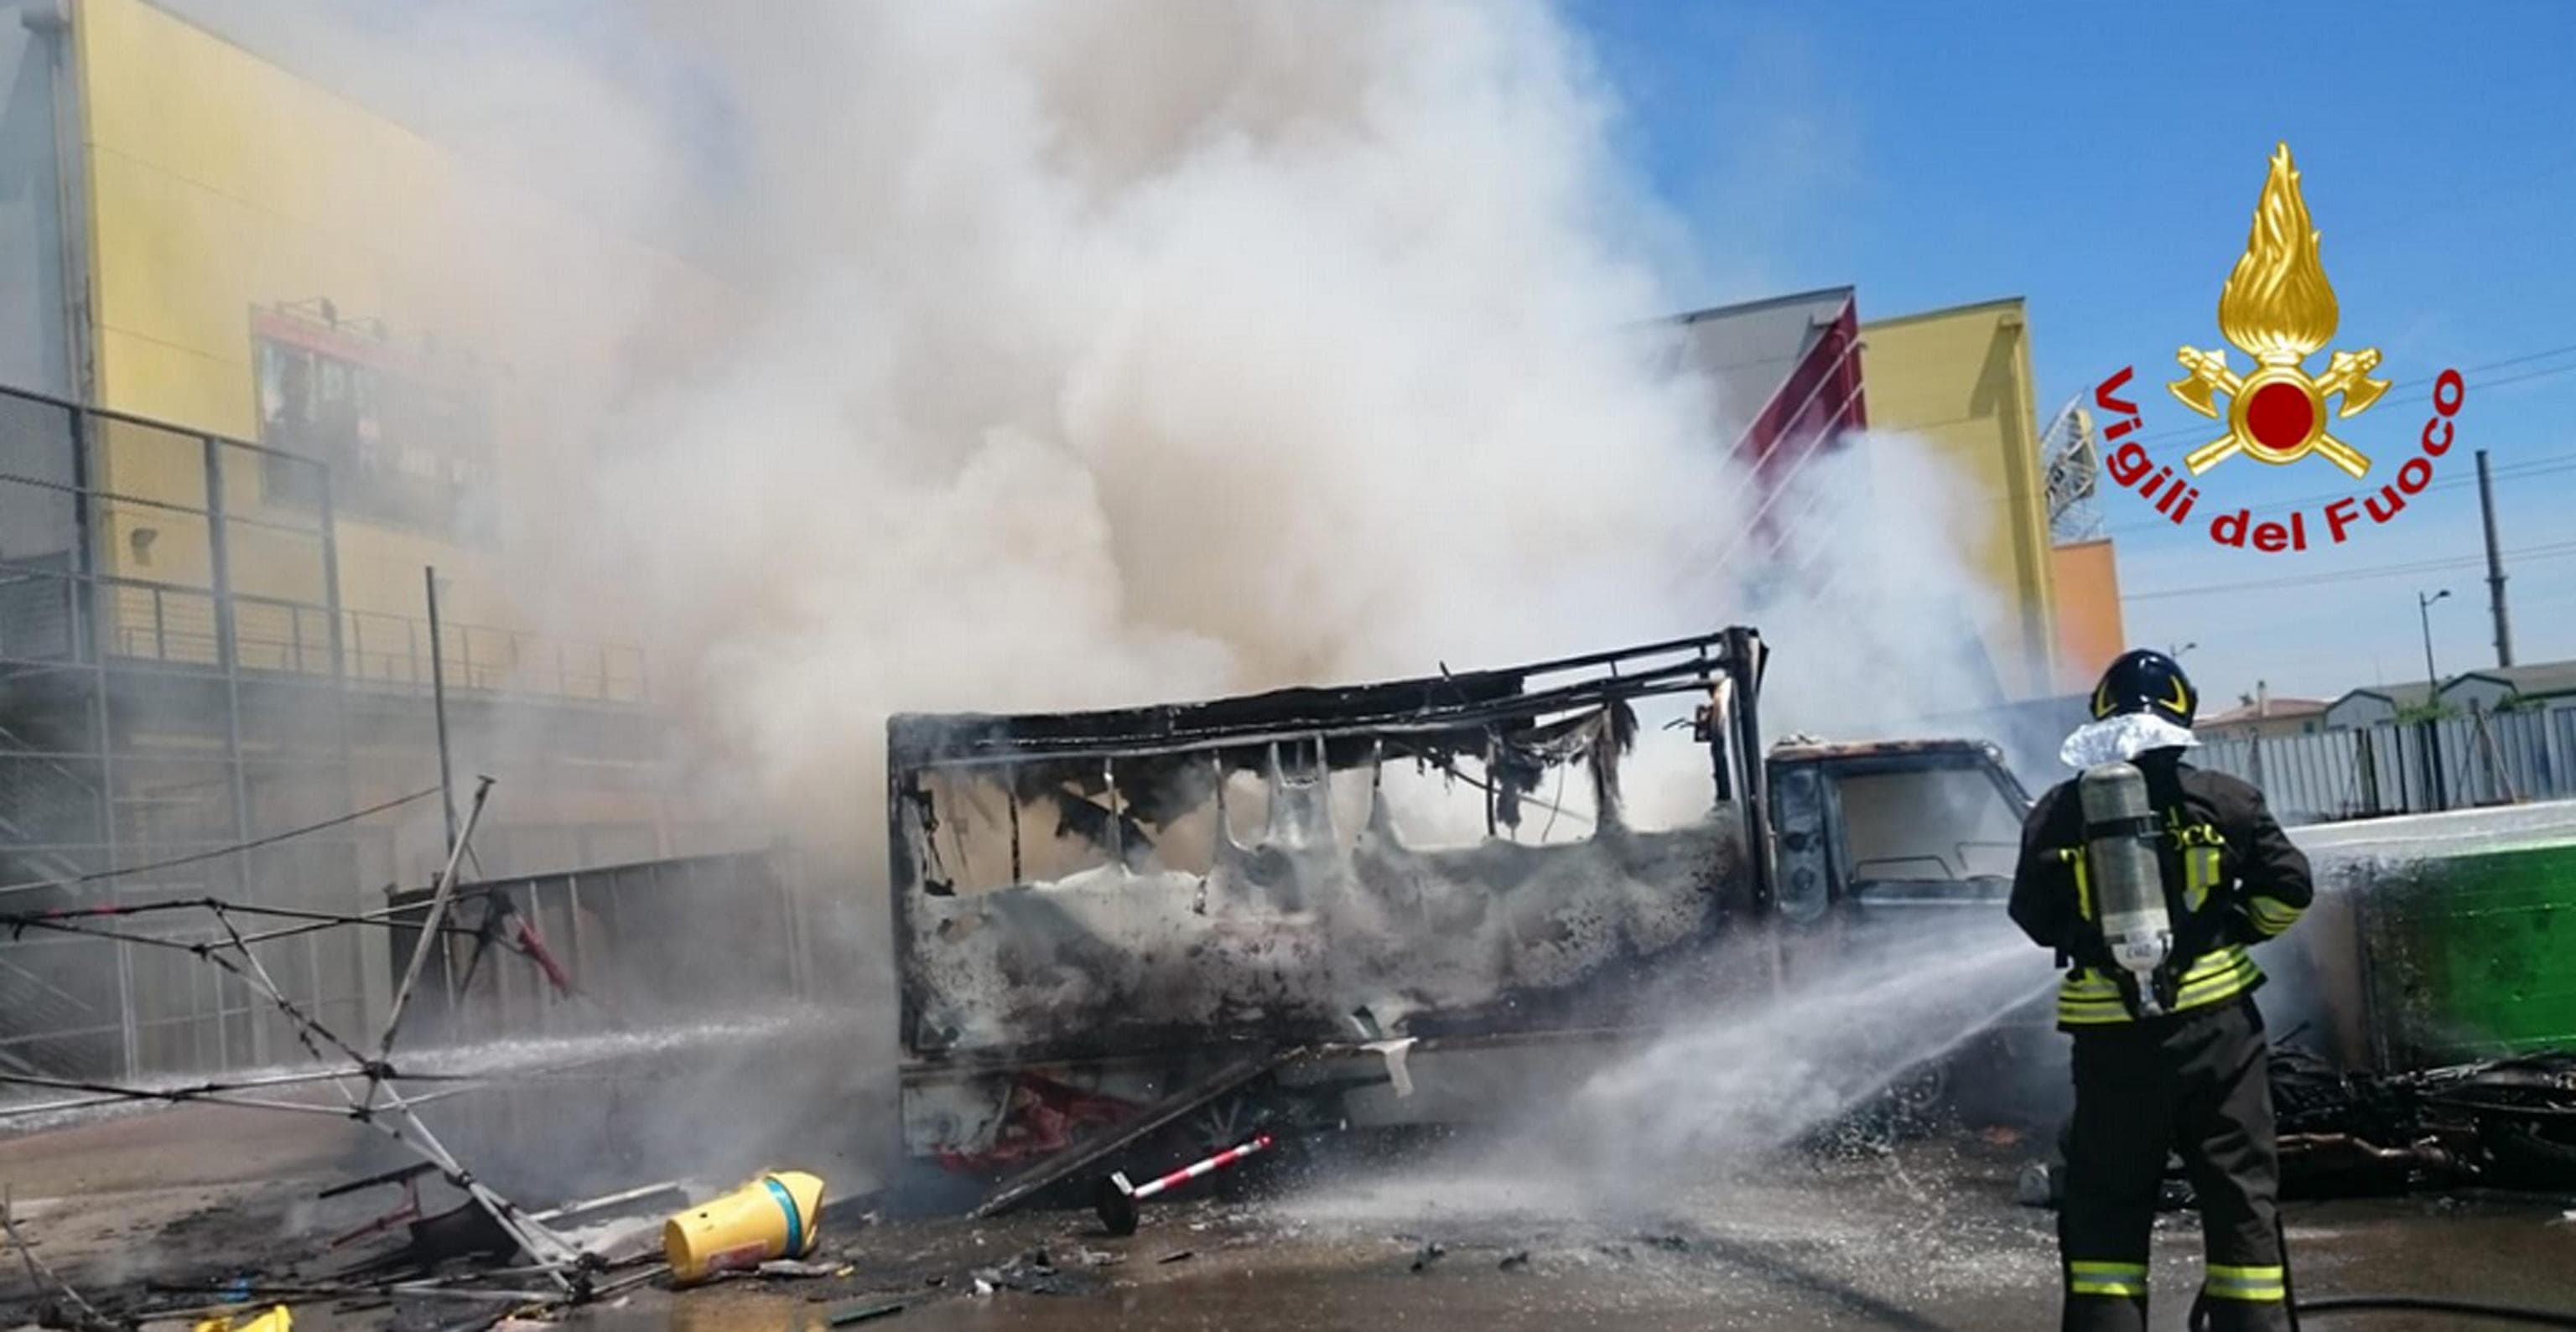 Marghera, esplode furgone che vende panini: quattro feriti, due sono gravi